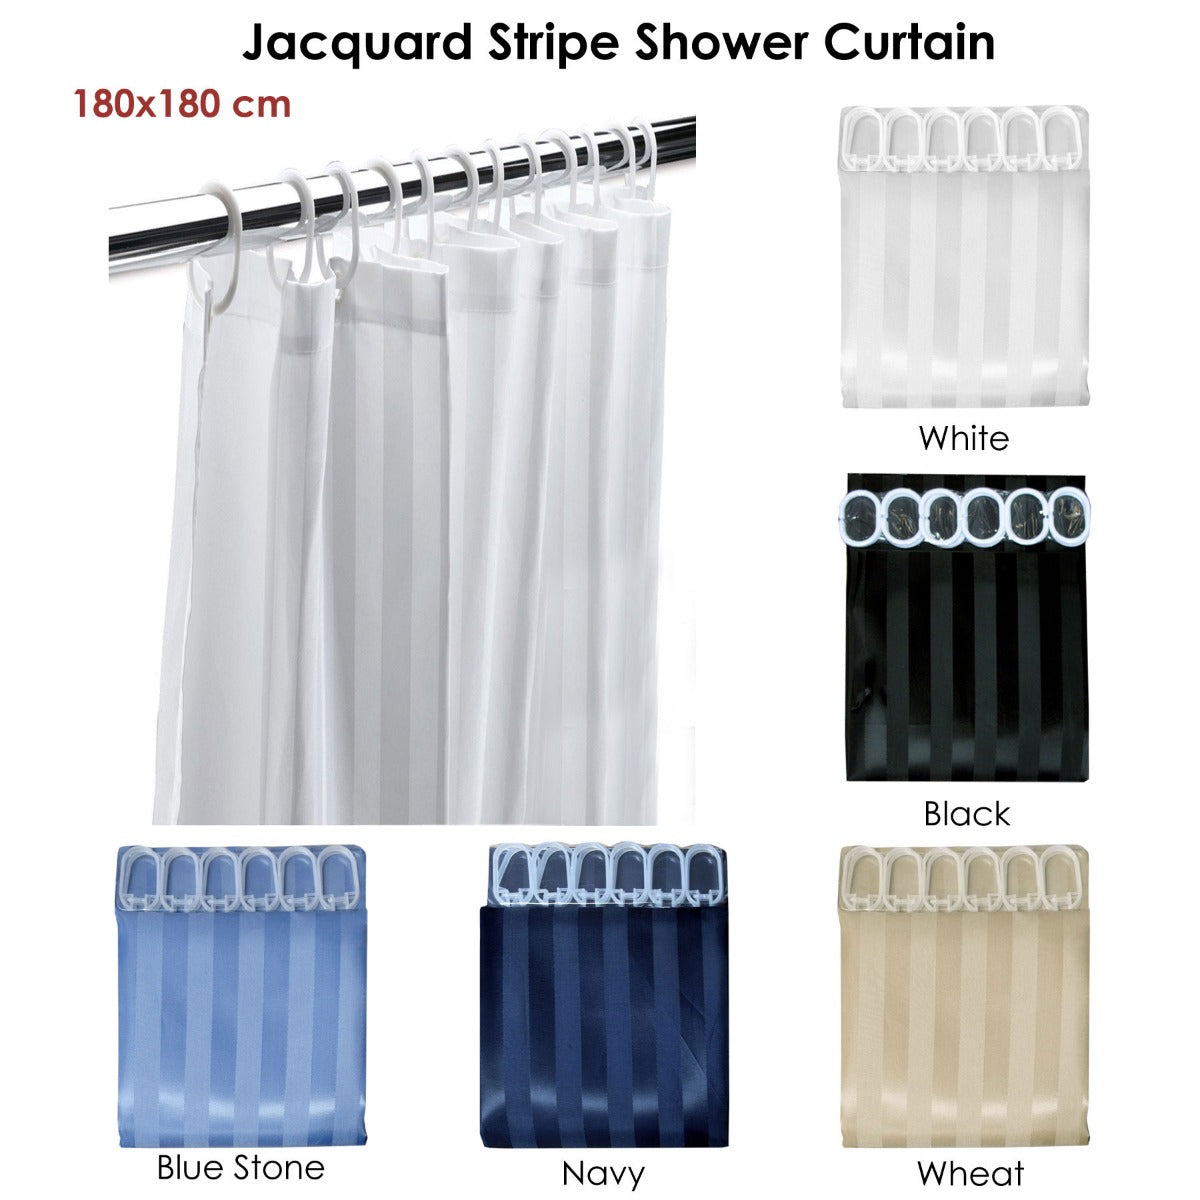 Jacquard Stripe Shower Curtain White - BM House & Garden